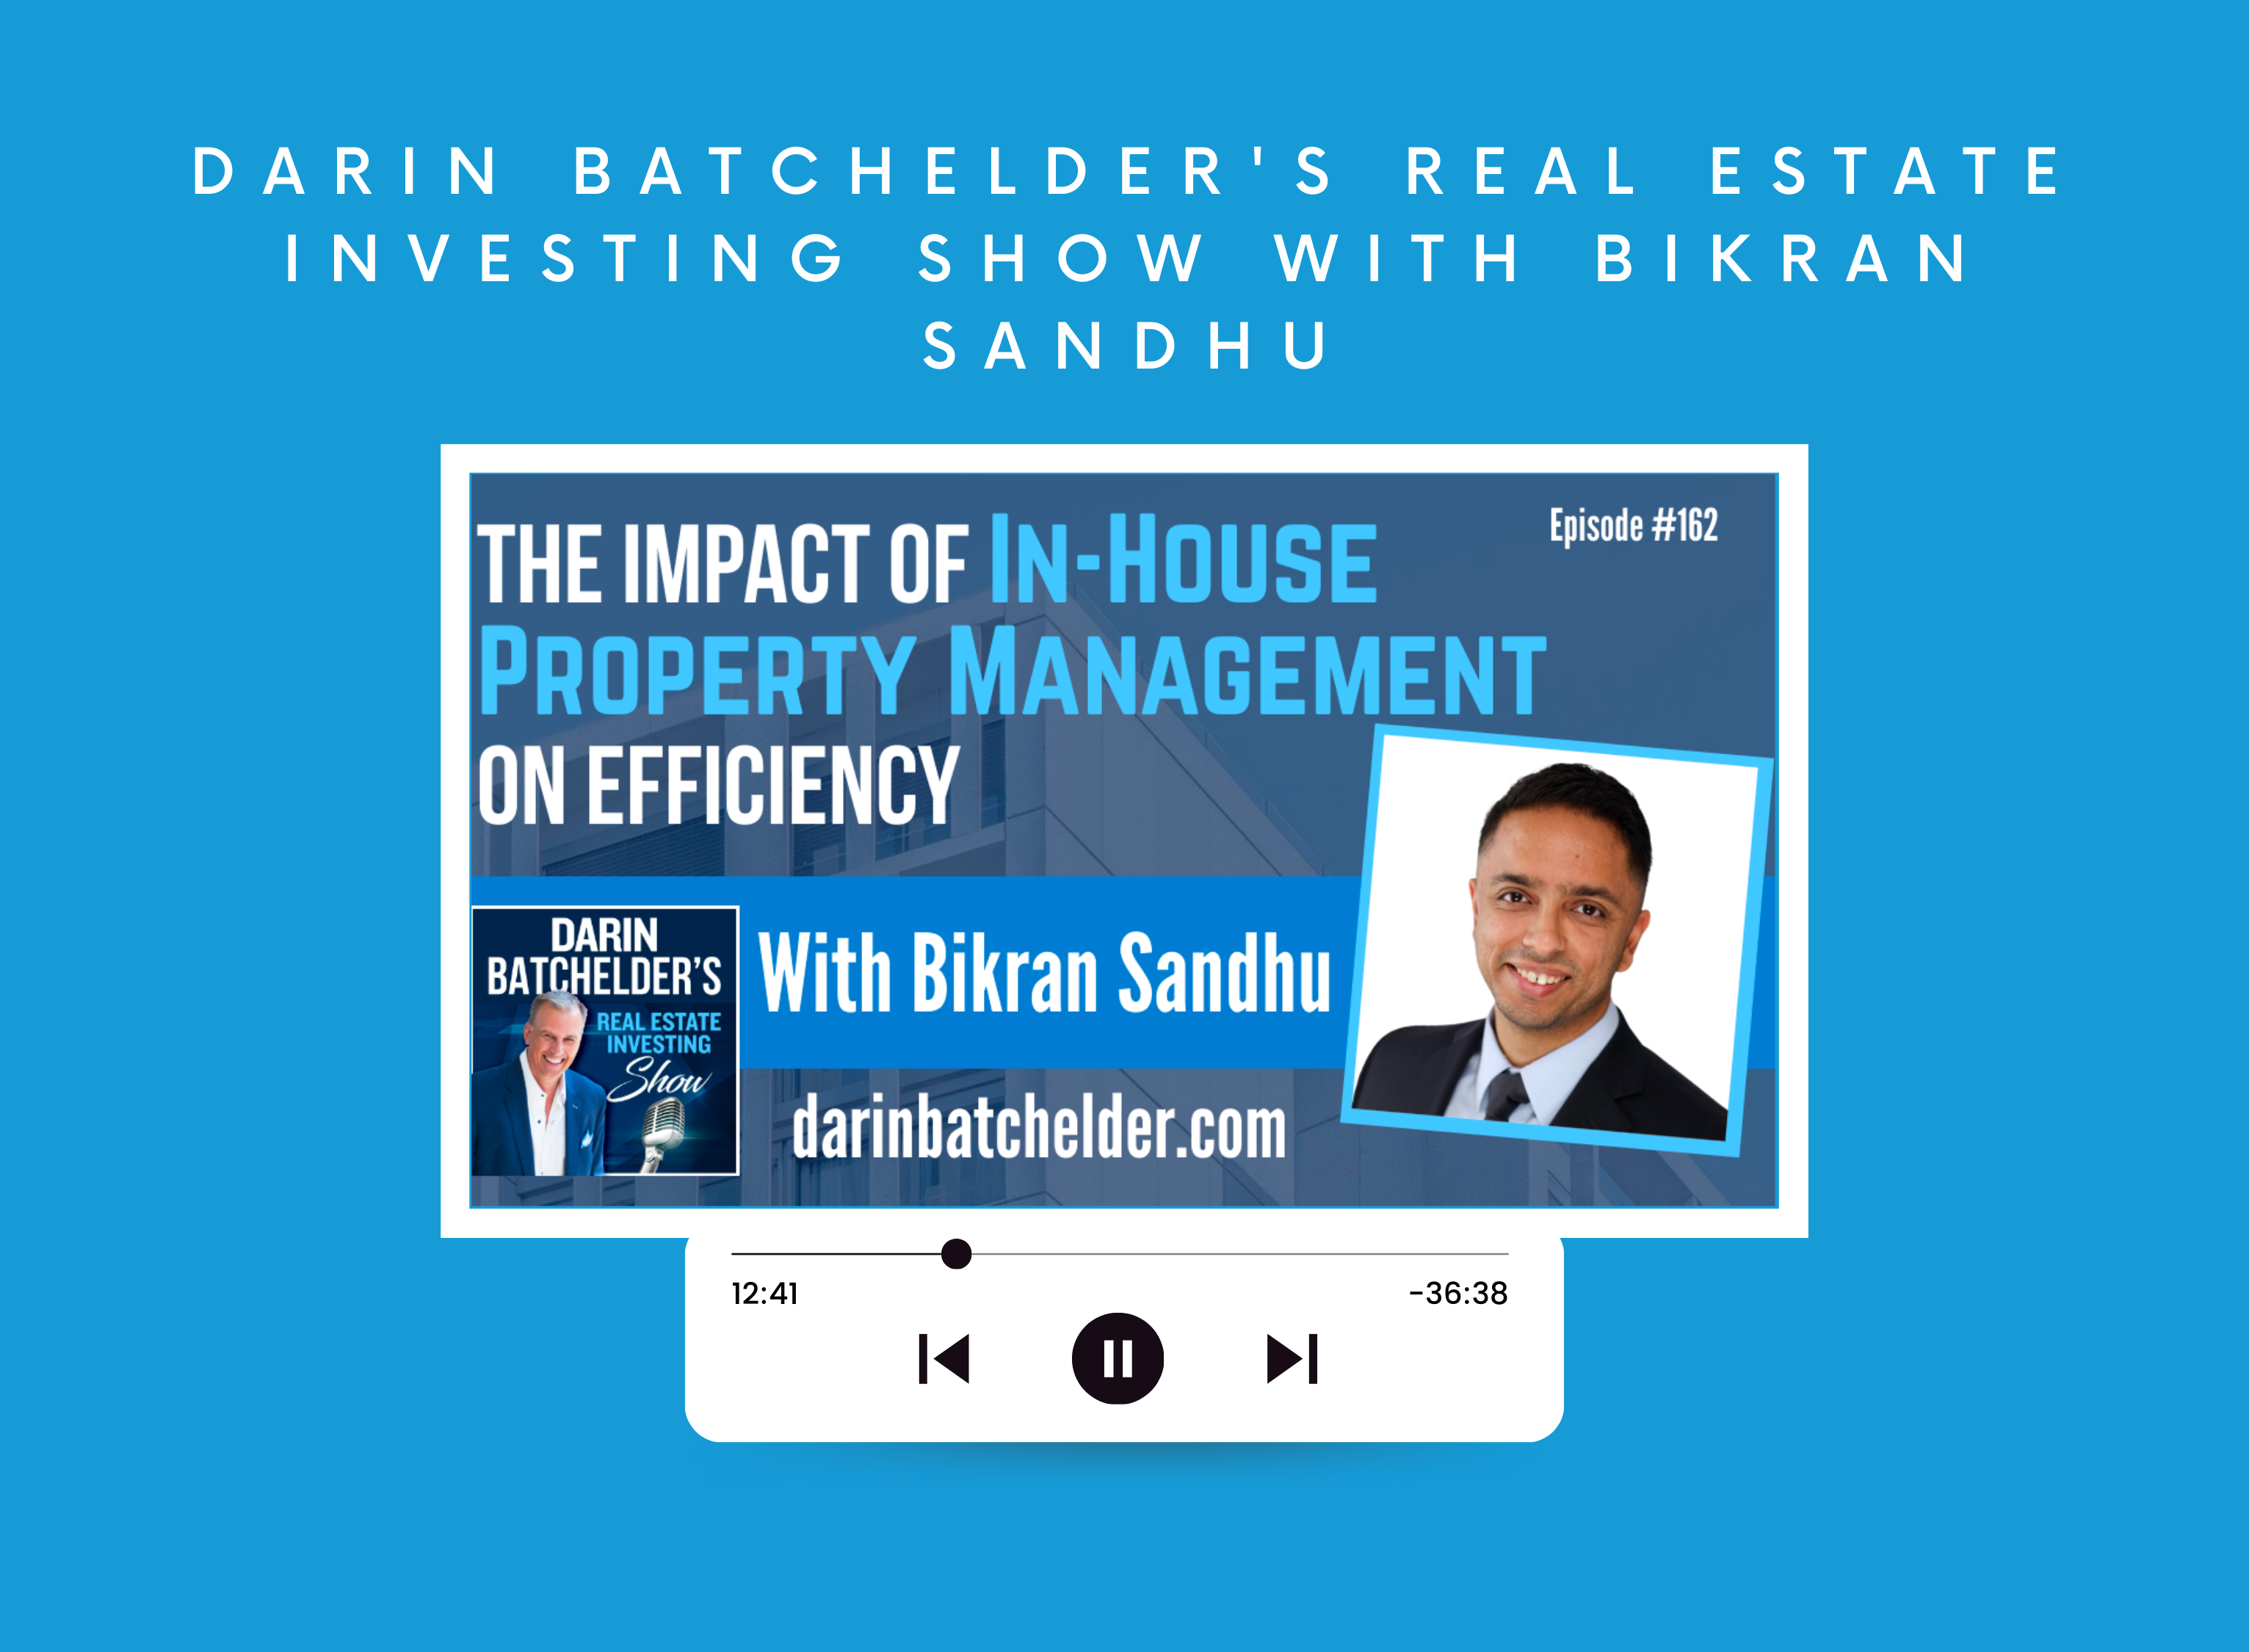 Darin Batchelder's Real Estate Investing Show with Bikran Sandhu